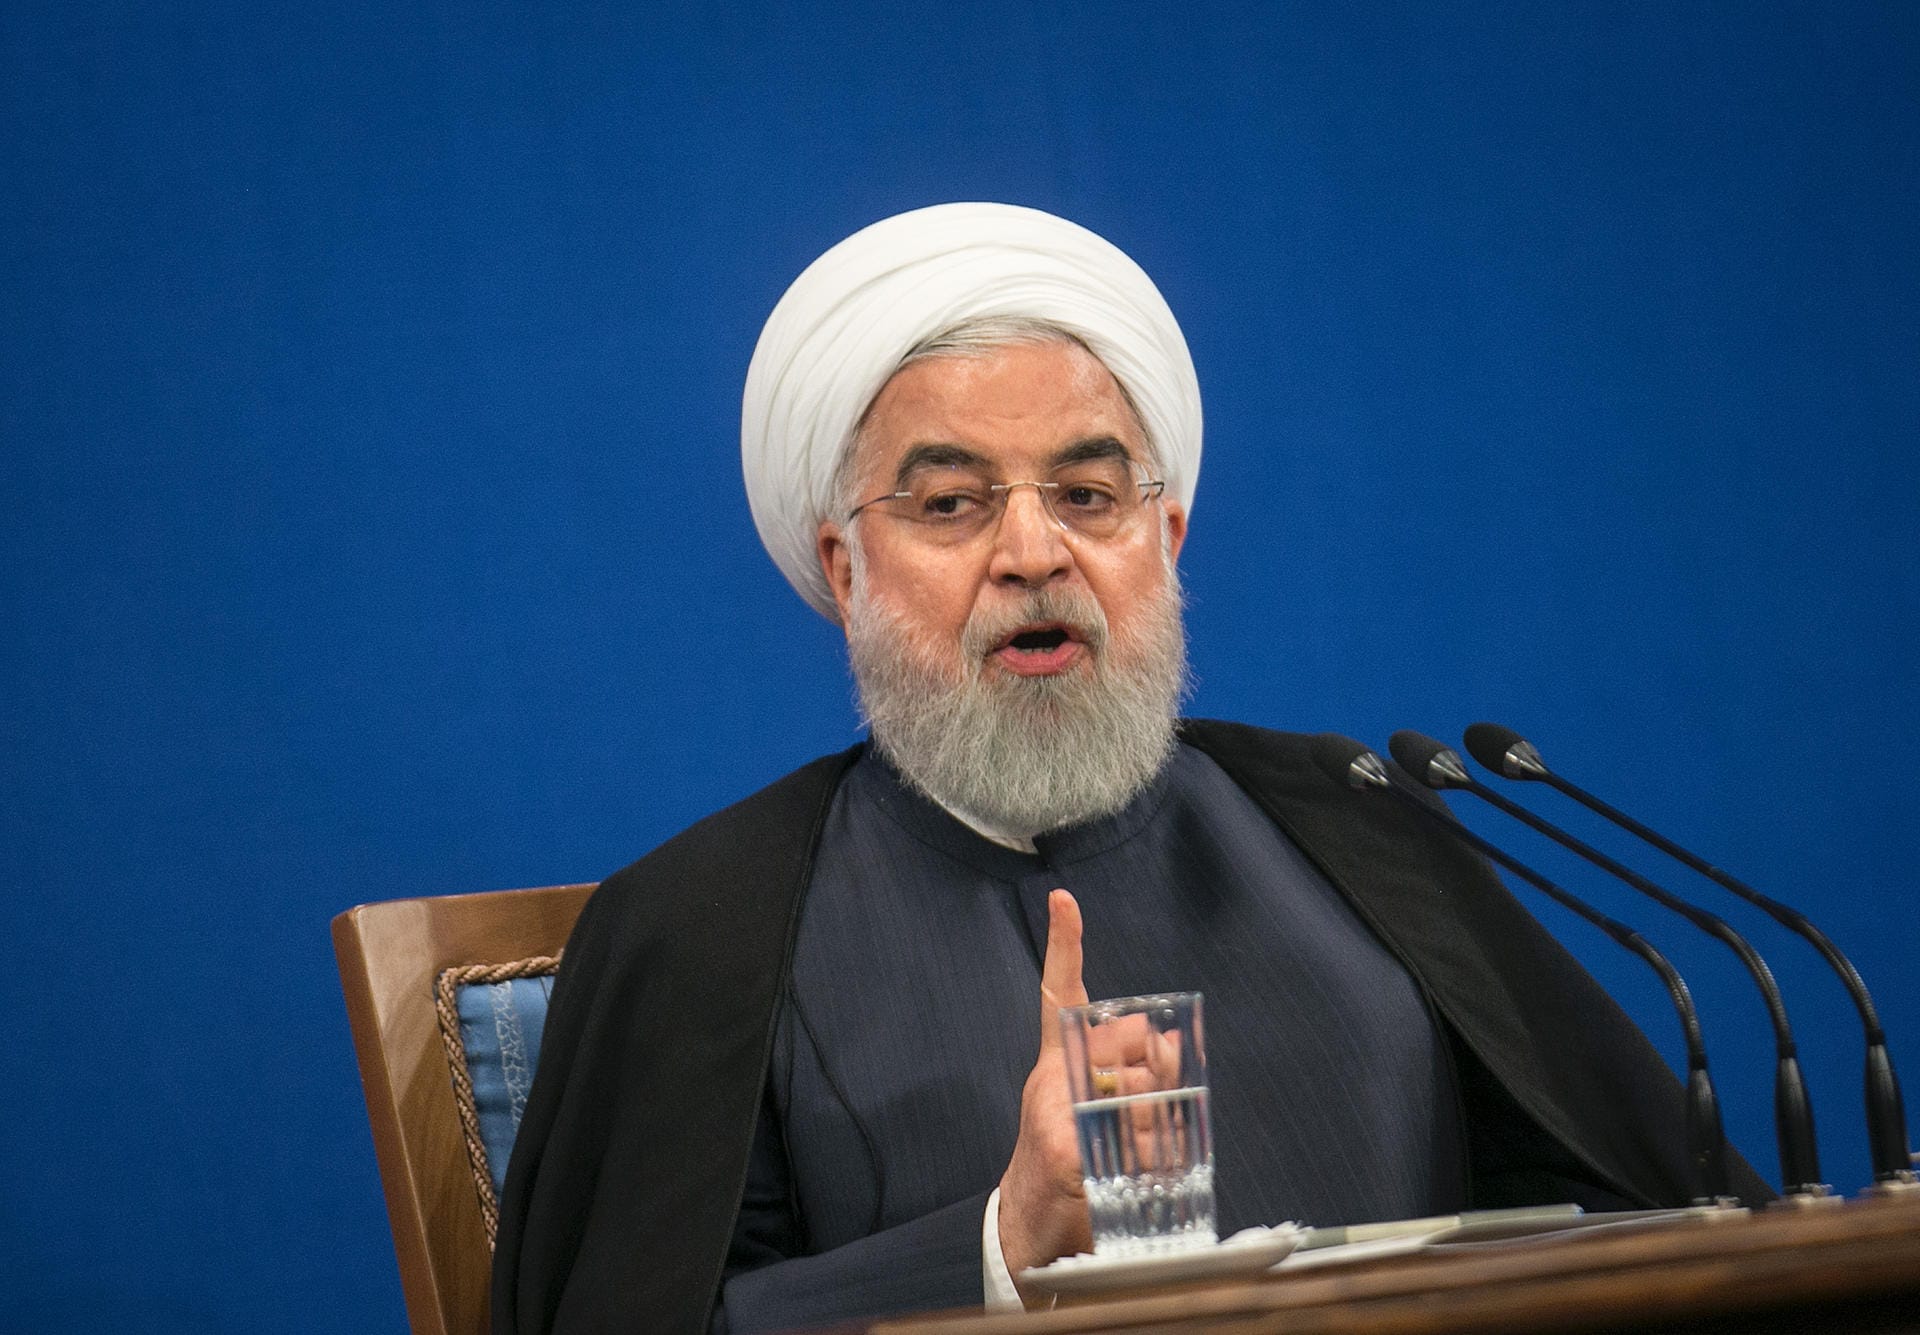 Irans Präsident Hassan Ruhani hat die USA scharf verurteilt und Vergeltung angekündigt. "Zweifellos werden der Iran und andere unabhängige Staaten dieses schreckliche Verbrechen der USA rächen", schrieb Ruhani in einem Beileidsschreiben. Diese feige Tat zeige die Verzweiflung der amerikanischen Nahostpolitik. "Diese Tat ist ein weiterer dunkler Fleck für die USA."